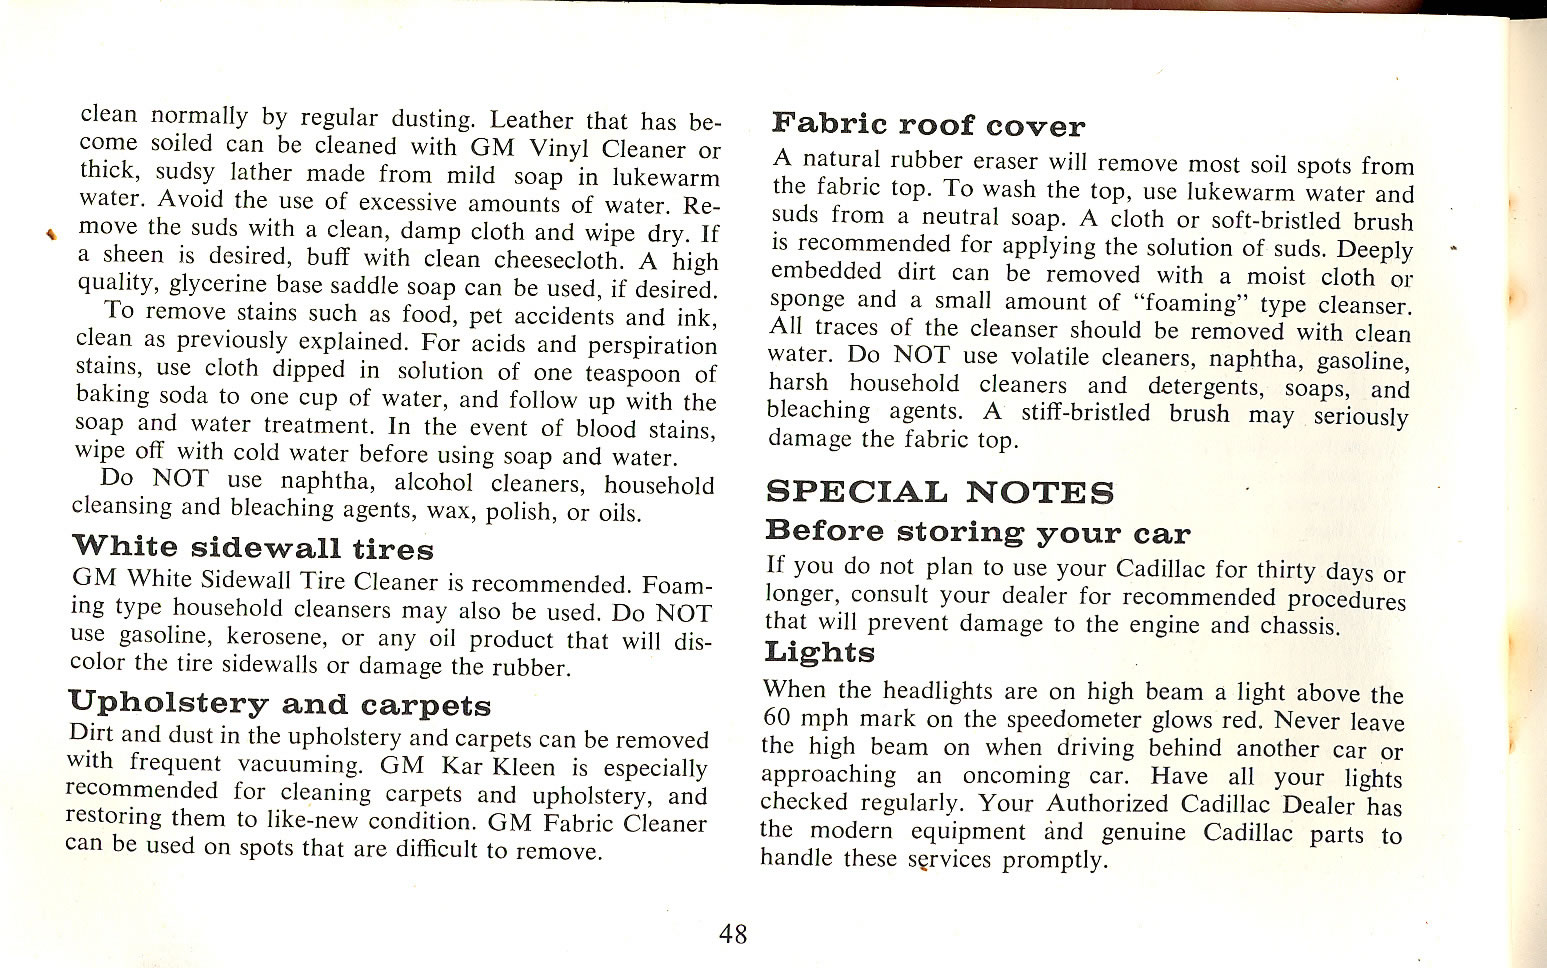 1965 Cadillac Manual-48